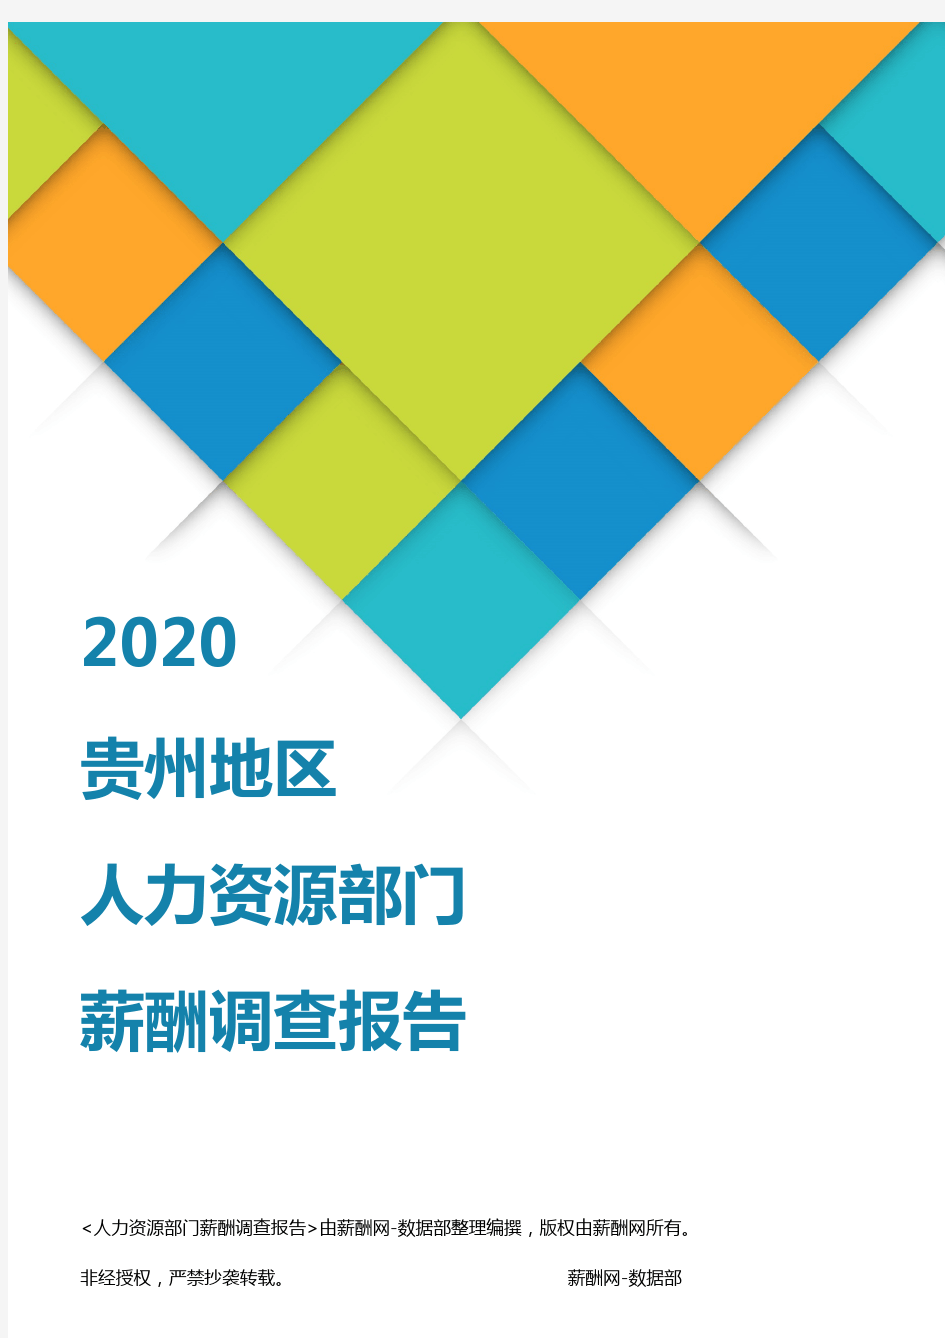 薪酬报告系列-2020贵州地区人力资源部门薪酬调查报告